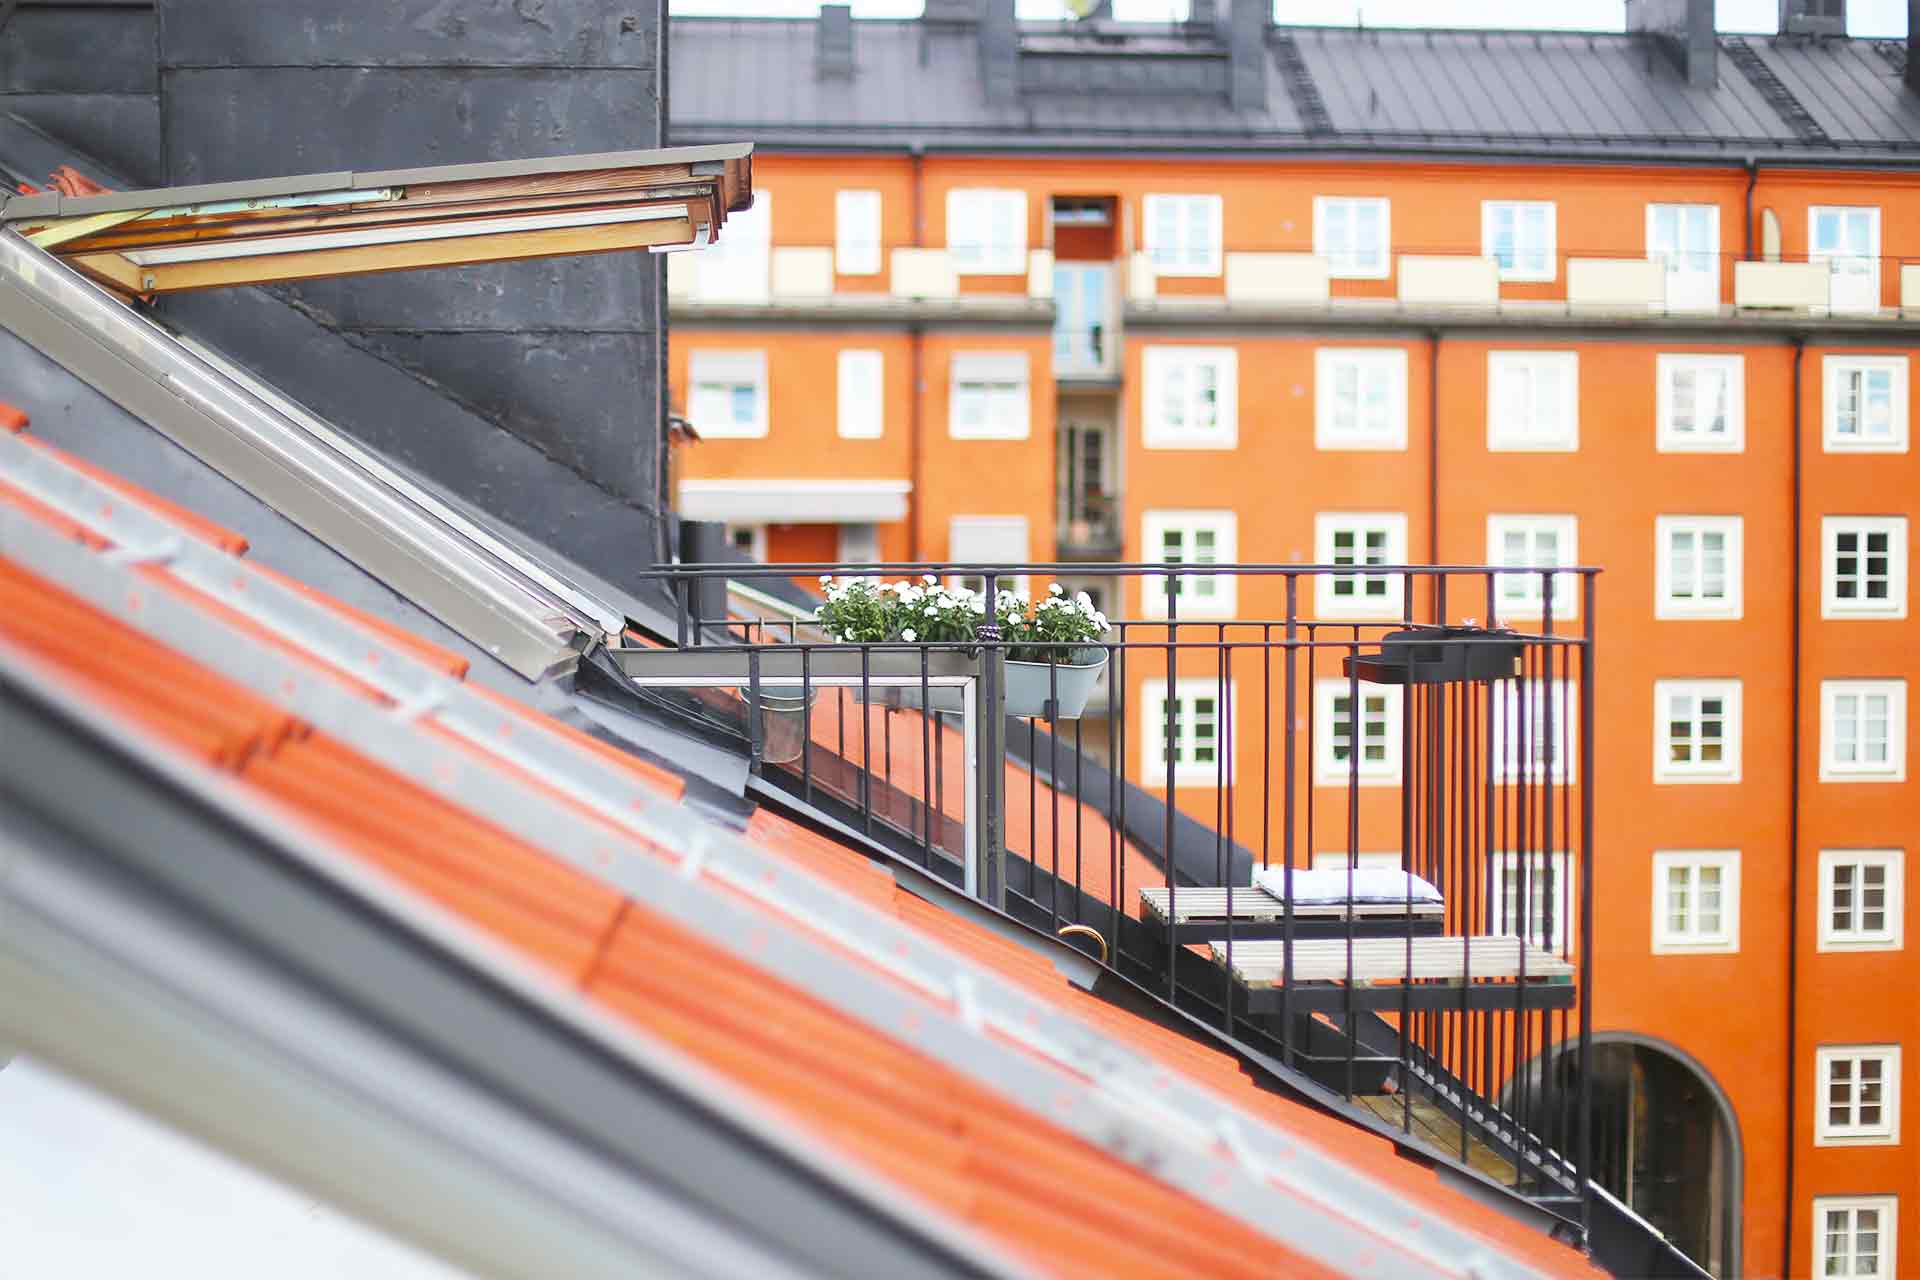 Vindslägenhetens takbalkong med tunt smidesräcke smyger fram bland färgglada sekelskifteshus. Arkitekt är Anders Frelin.